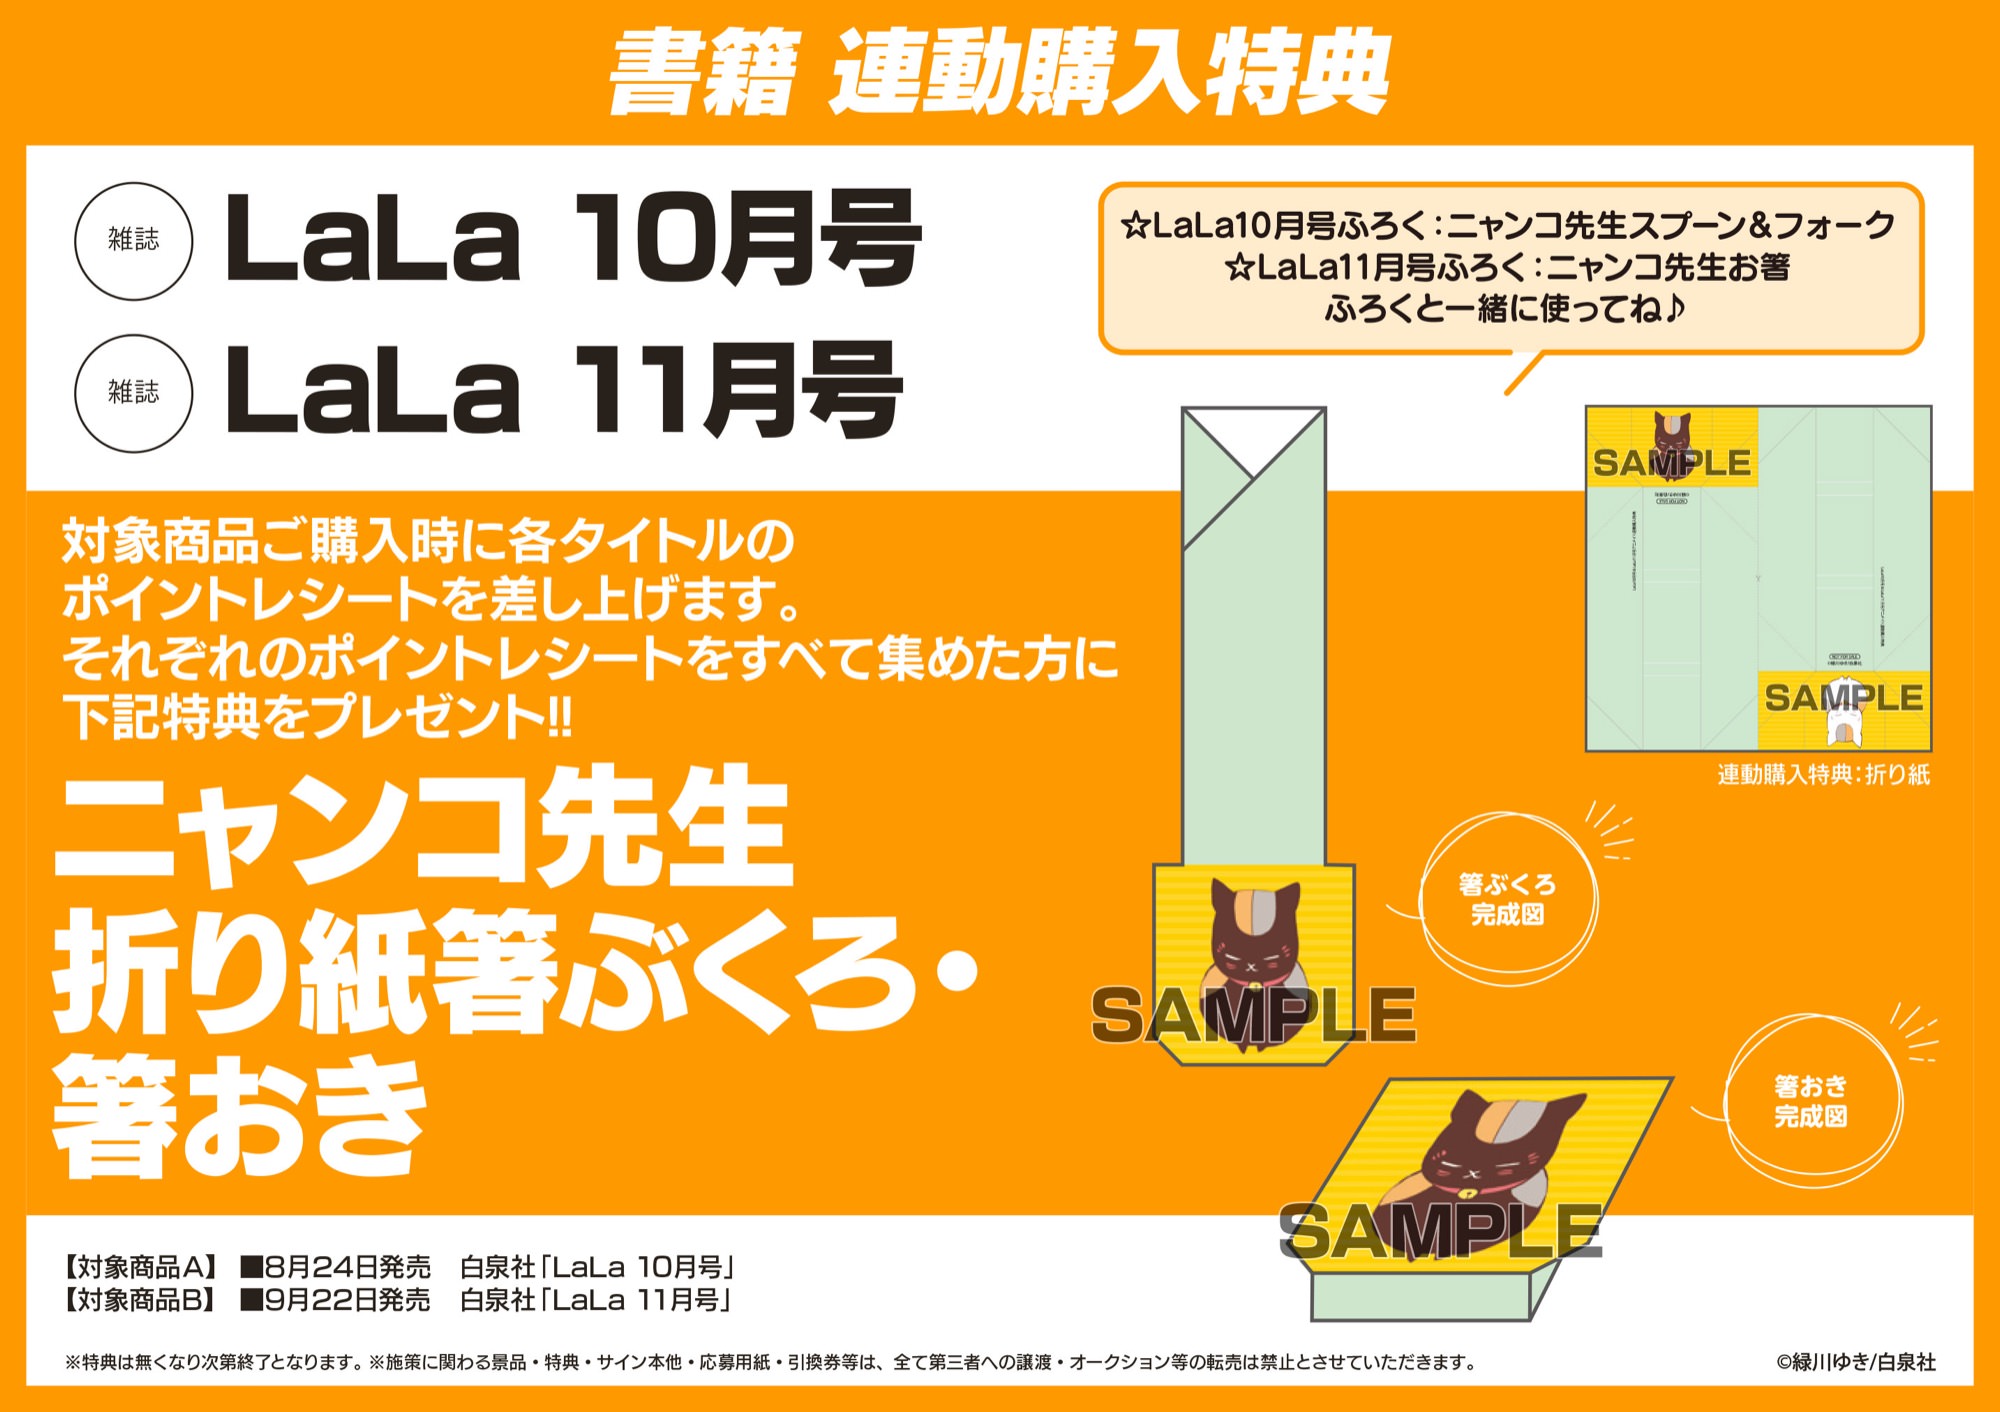 夏目友人帳 カトラリーが LaLa 10月号・11月号 2号連続購入者特典に登場!